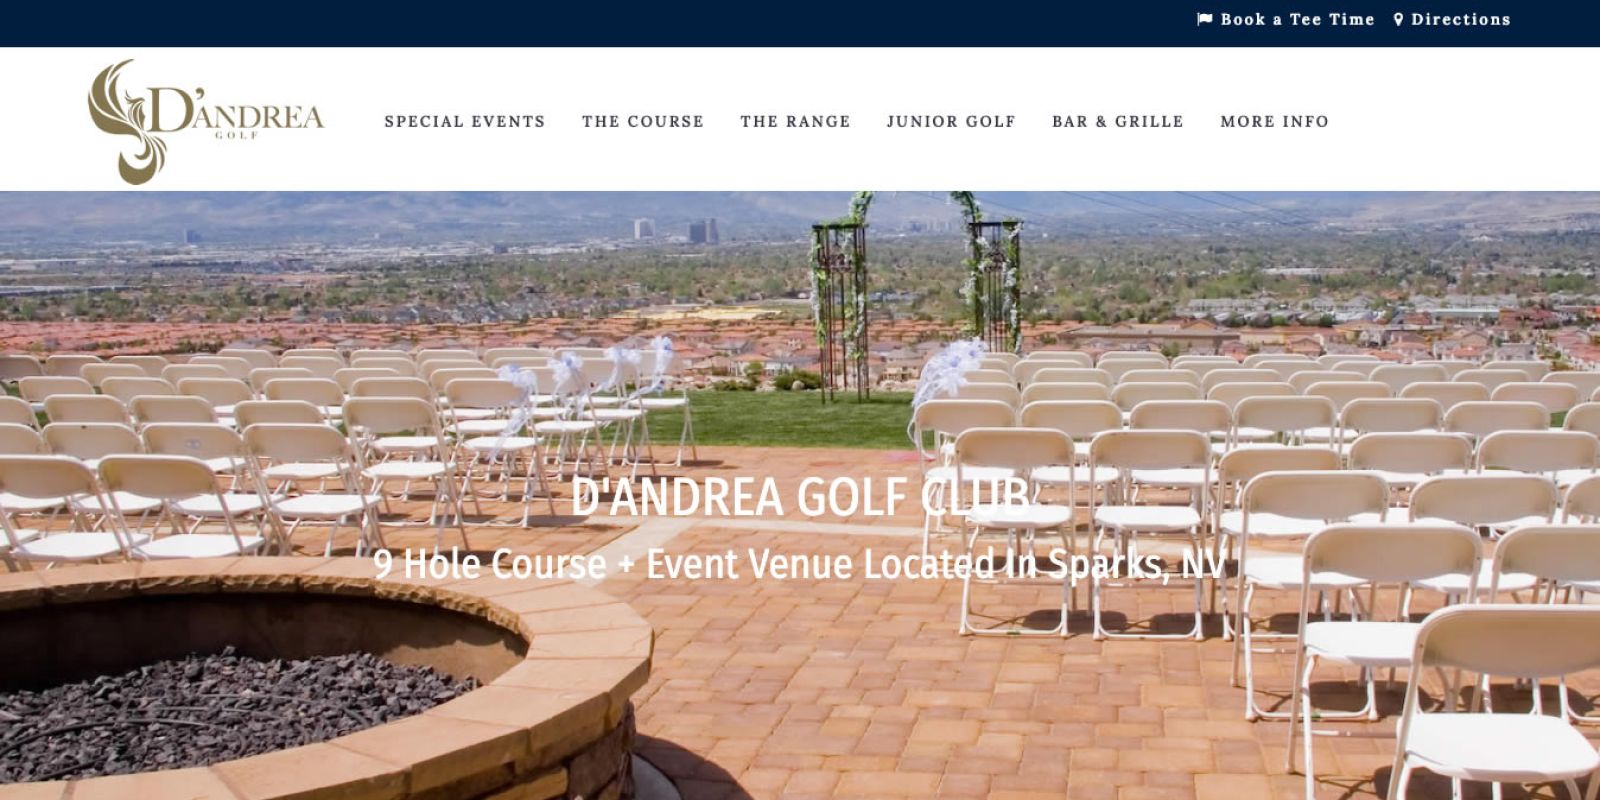 D'Andrea Golf Club